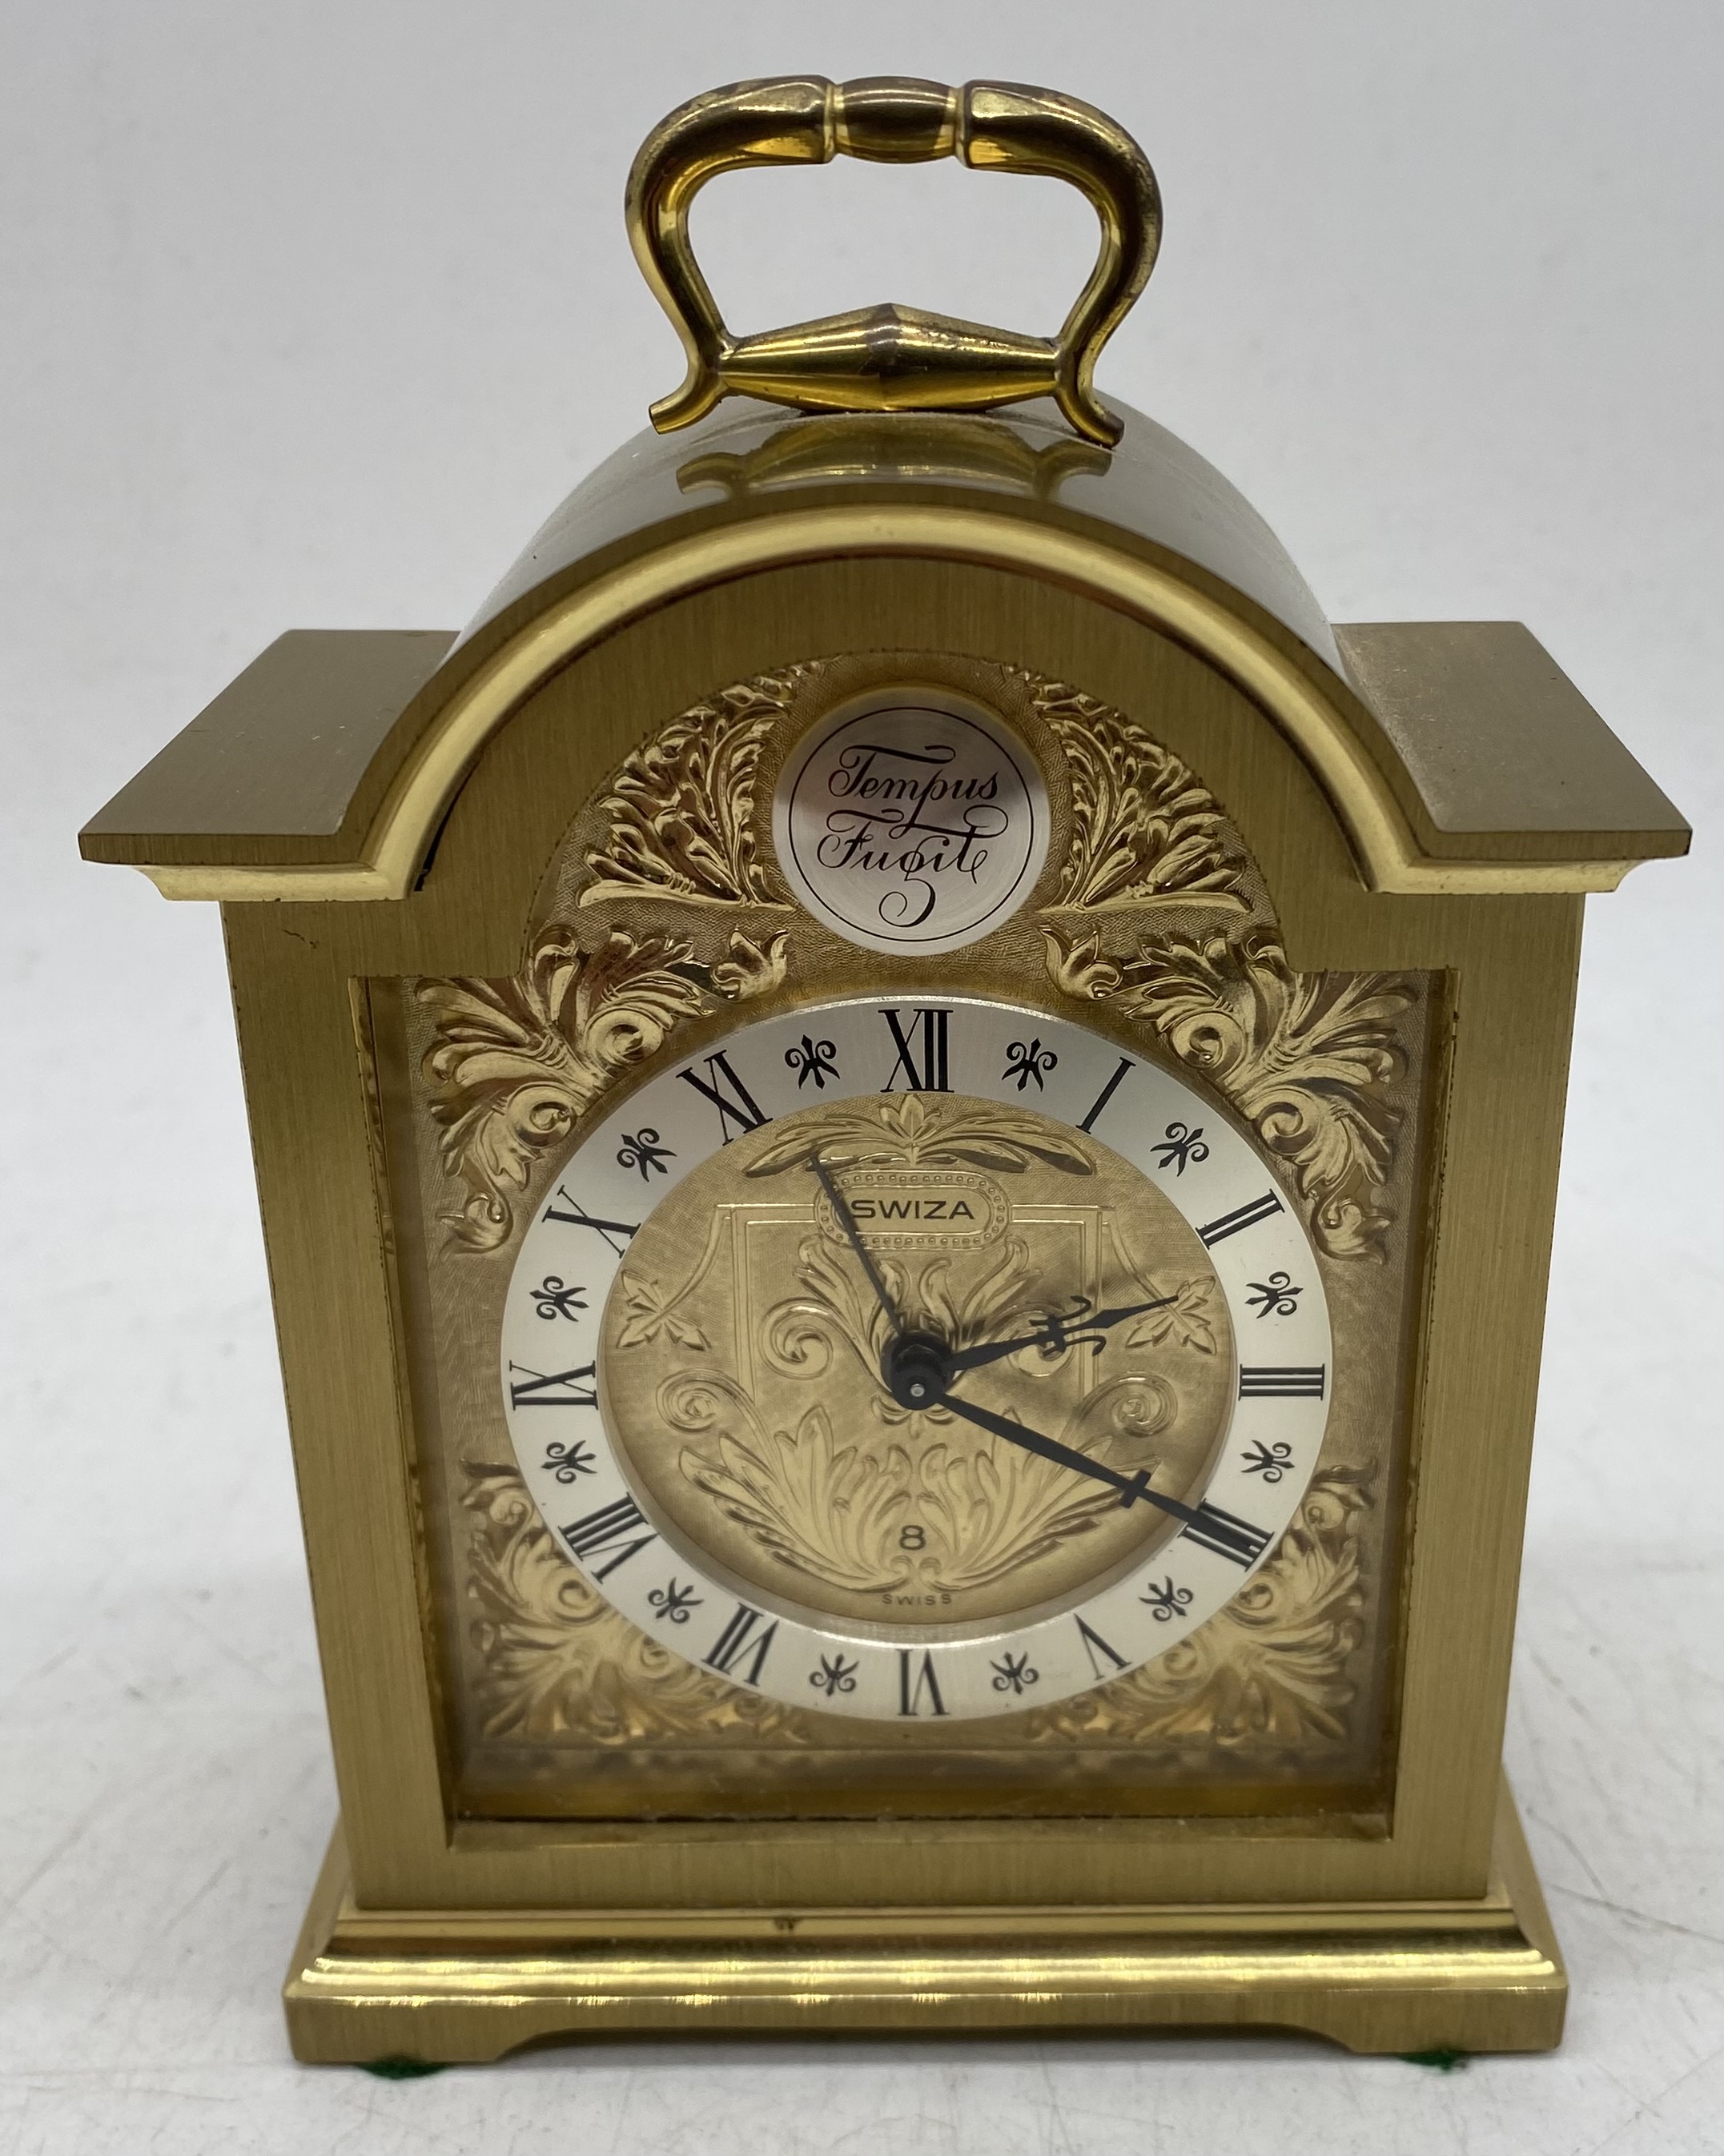 An Elliott of London small bracket clock in oak case along with a brass Swiza alarm clock - Image 7 of 9